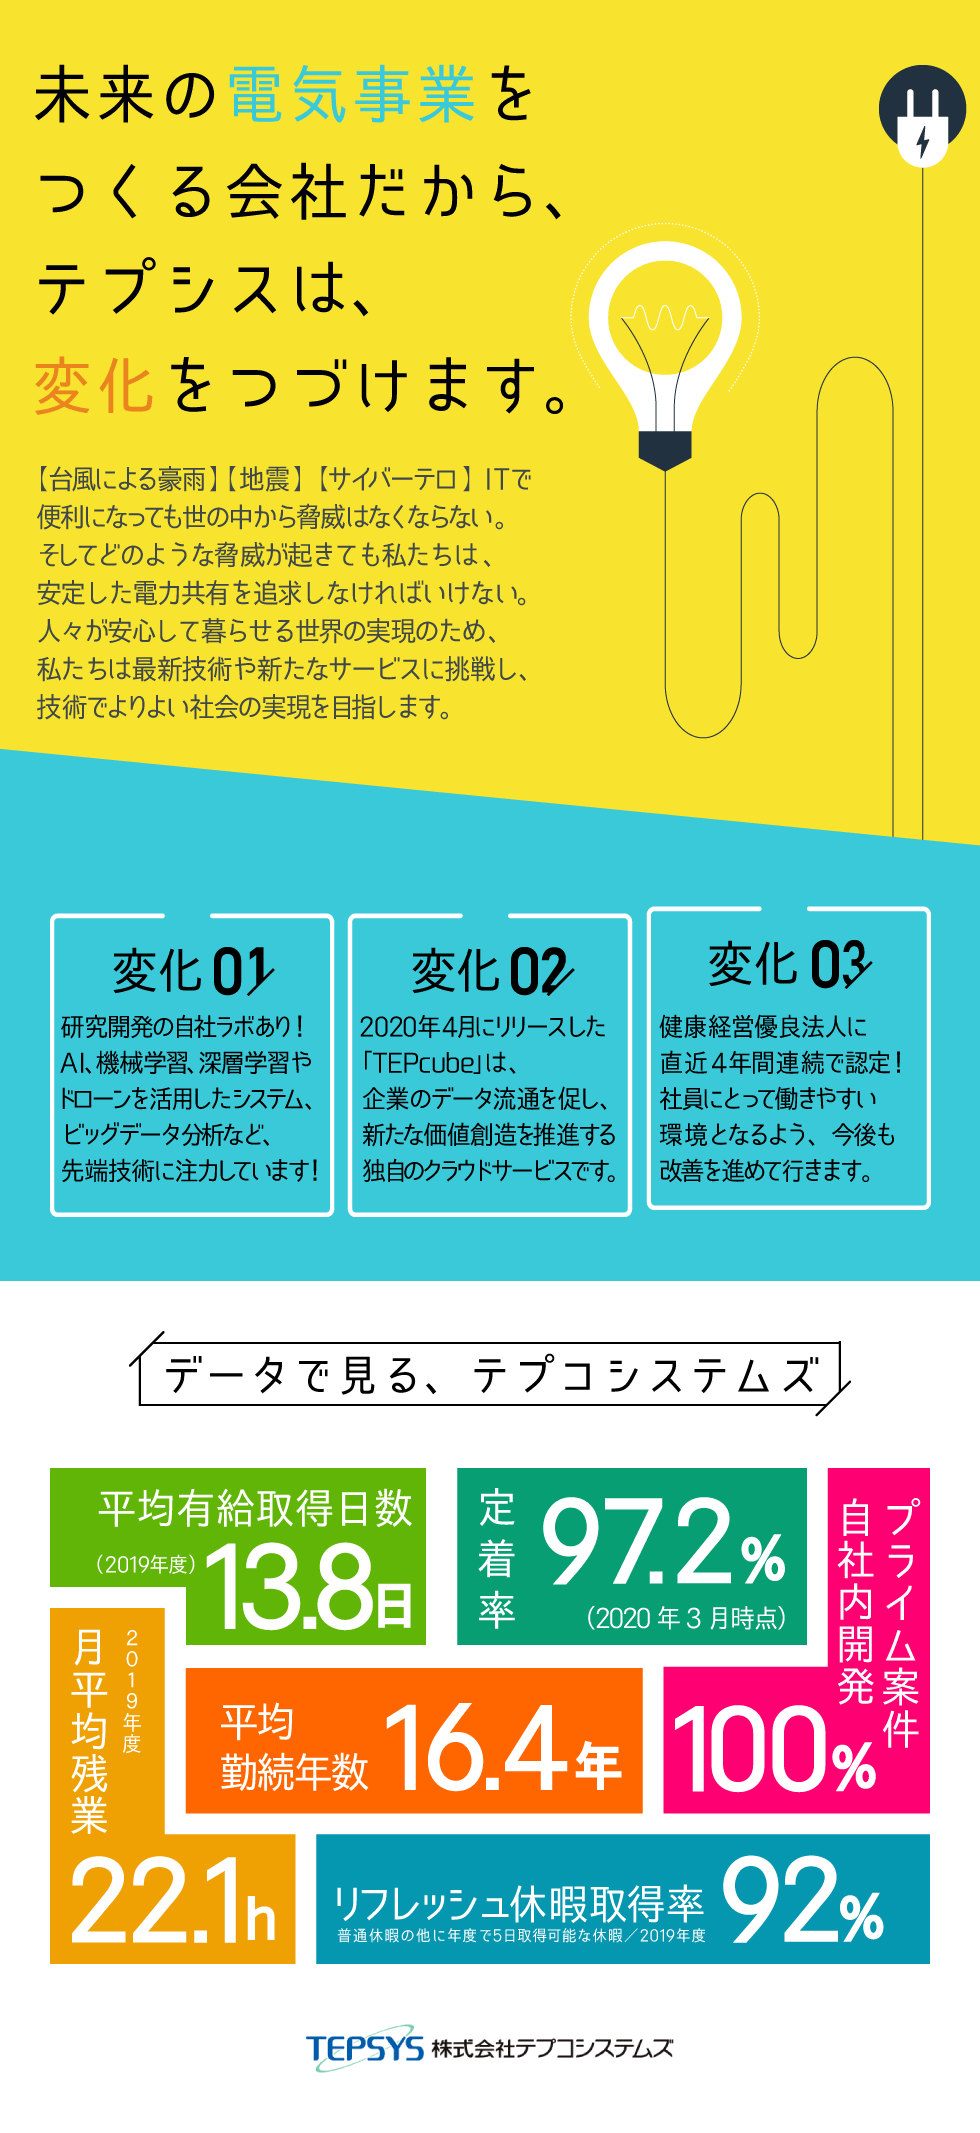 株式会社テプコシステムズ【東京電力グループ】